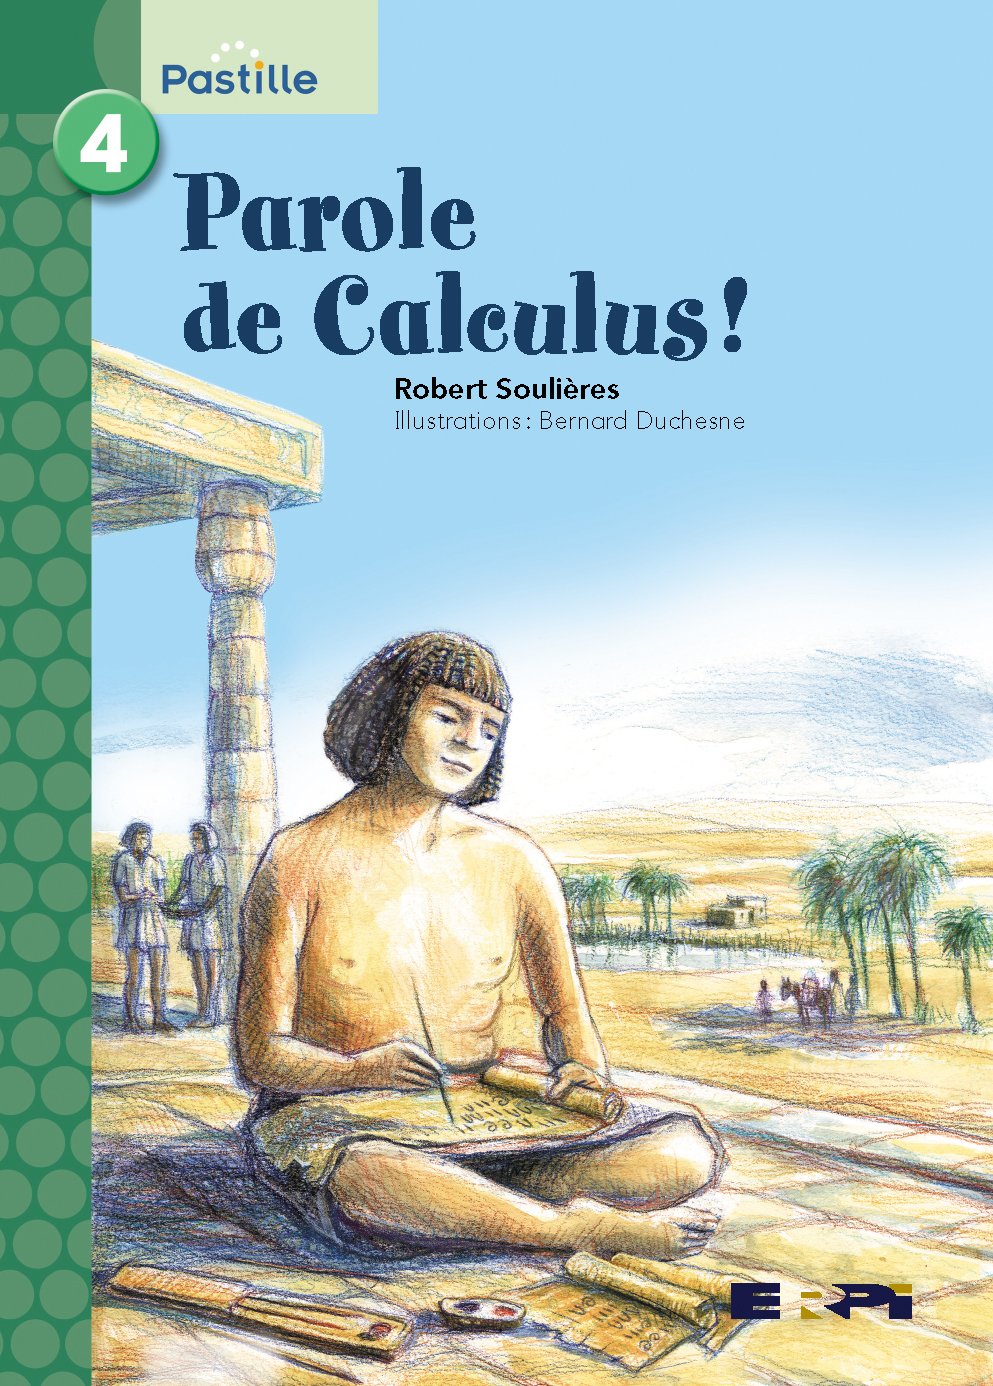 Pastille (série verte) # 4 : Parole de Calculus! - Robert Soulières